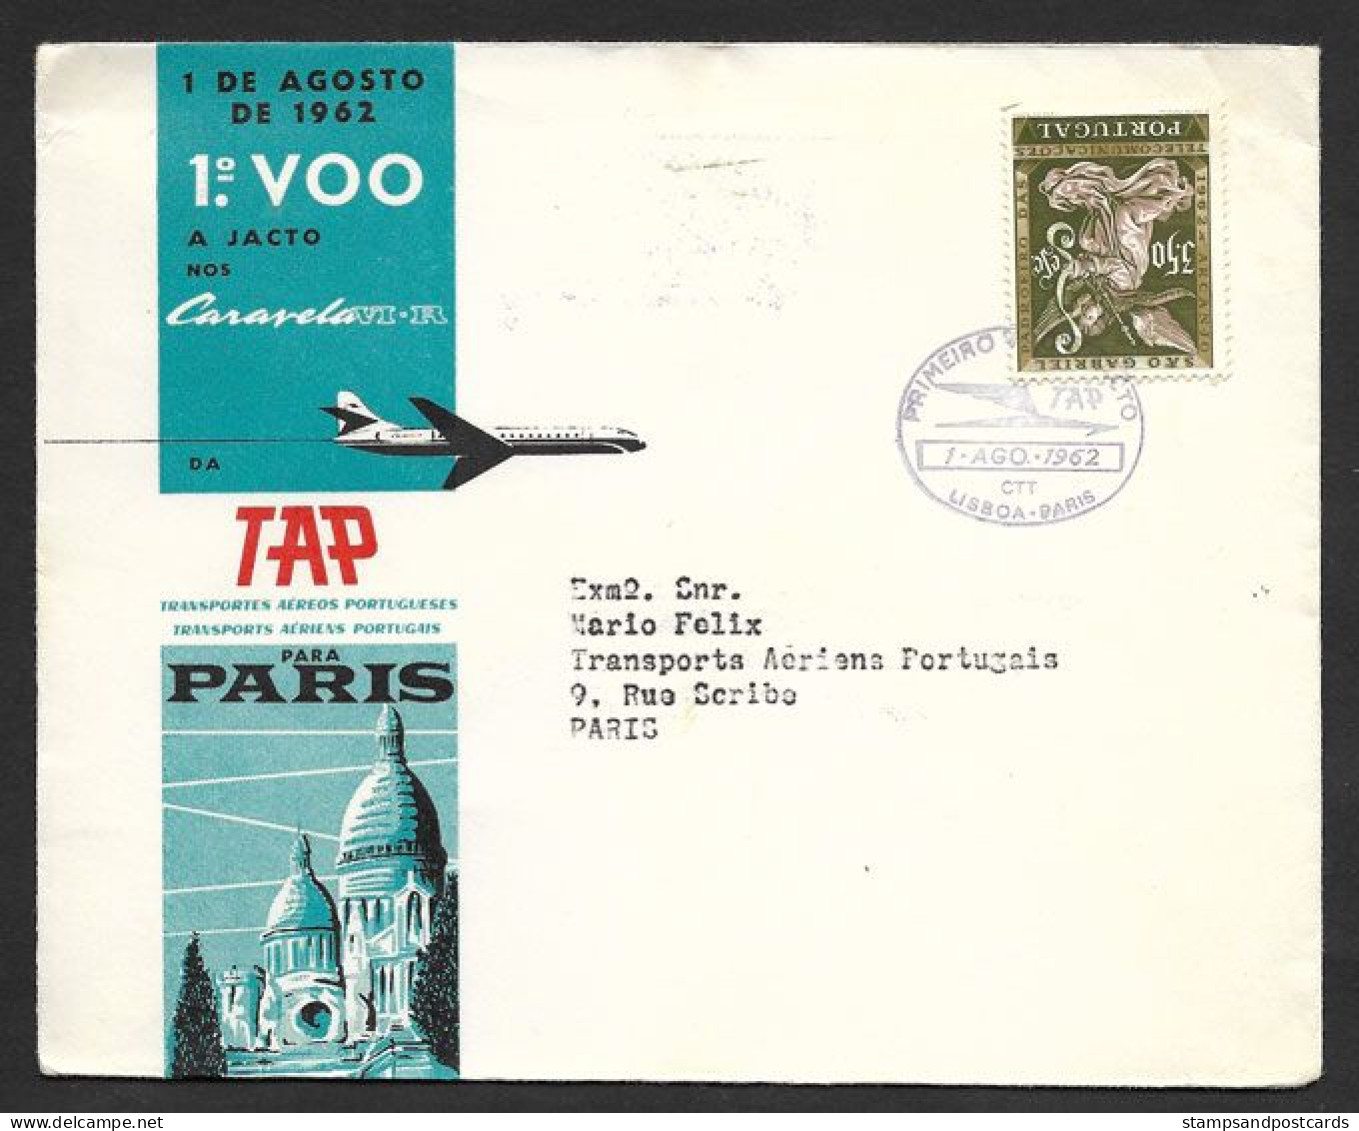 Portugal Premier Vol A Jact TAP Lisbonne Paris France Caravell VI-R 1962 First Jact Flight Lisbon Paris - Covers & Documents